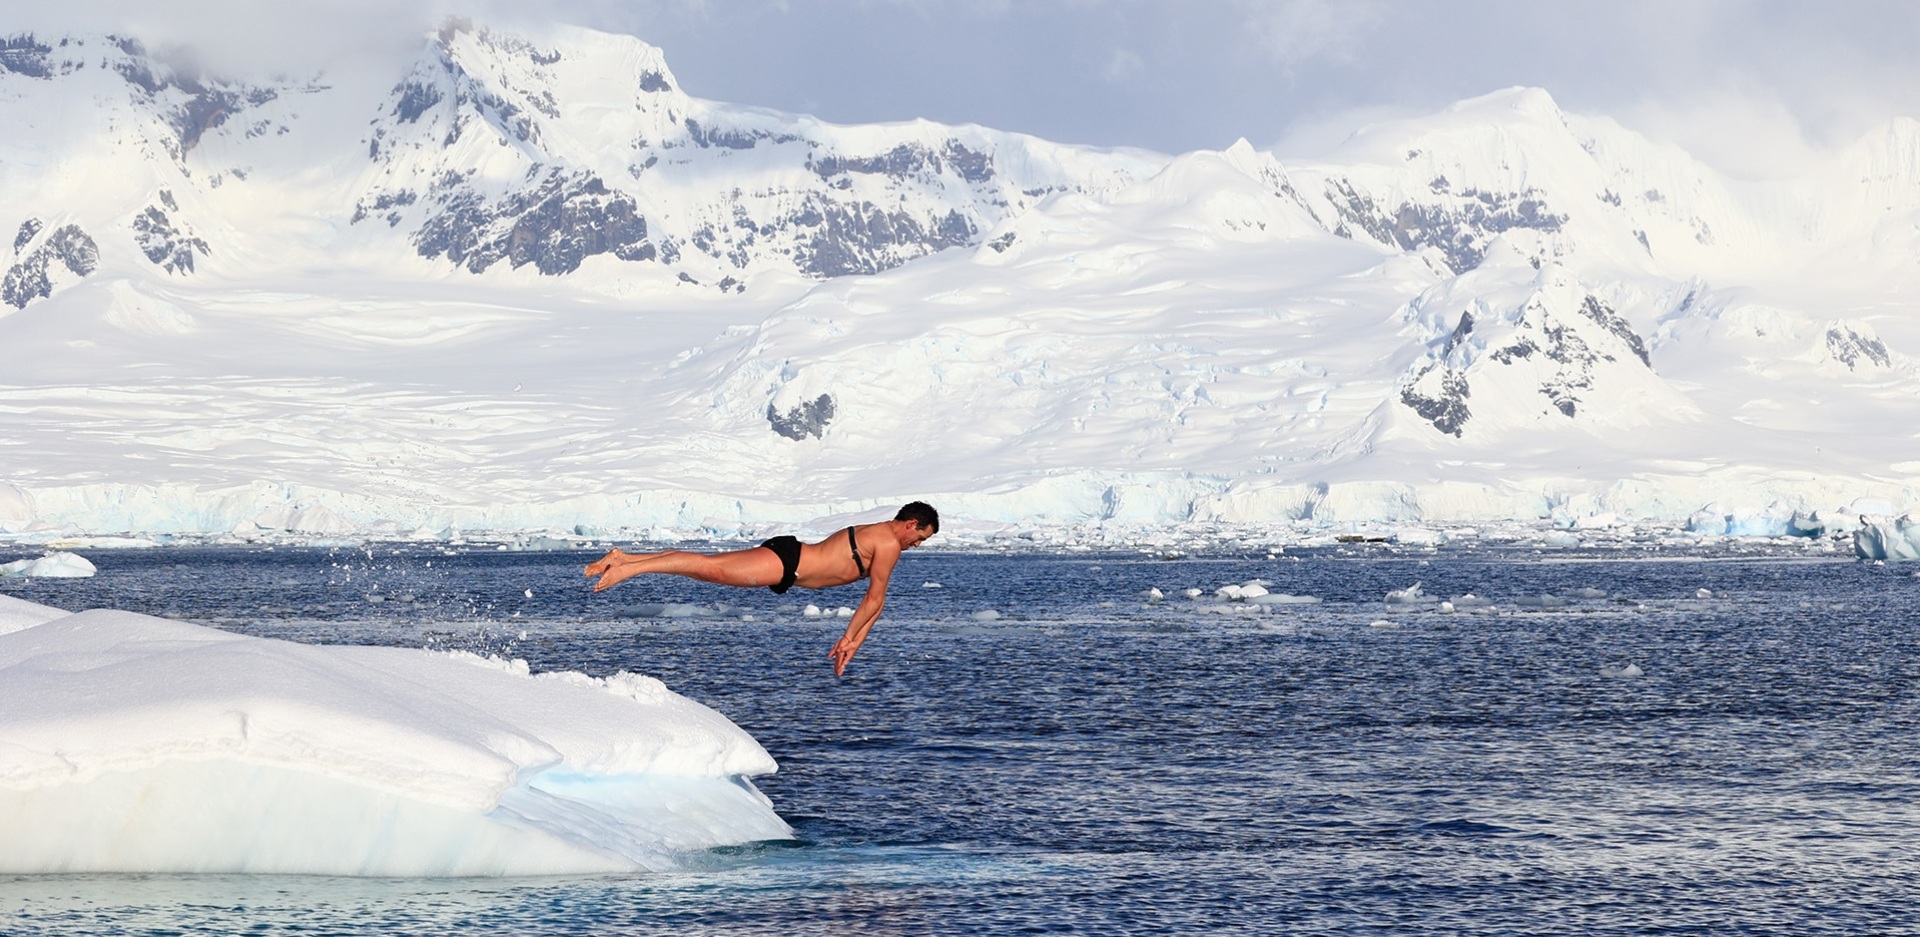 Γιώργος Τσιάνος: Ο γιατρός που κολύμπησε στην Ανταρκτική συνδυάζει επιστημονική και αθλητική ιδιότητα - Το πλούσιο βιογραφικό του.